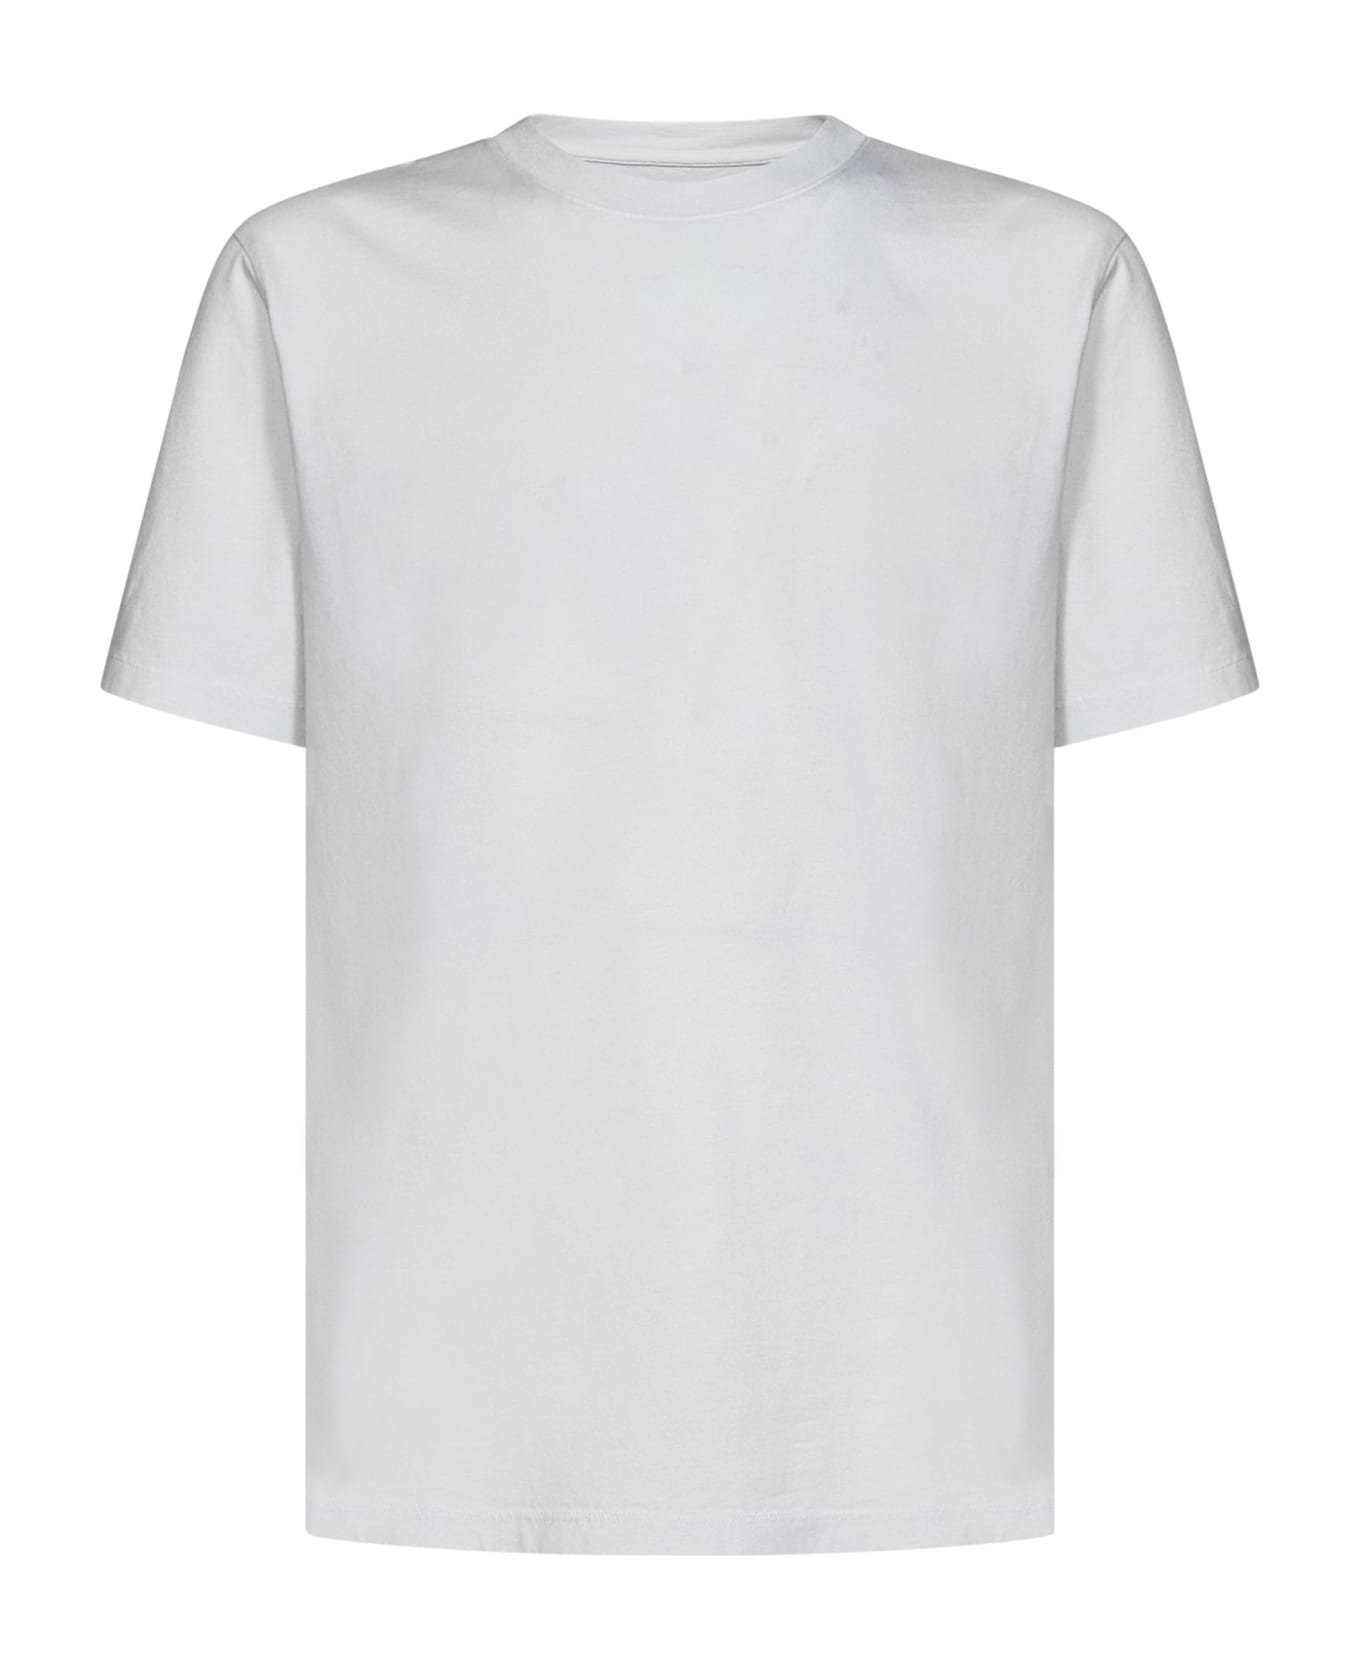 Maison Margiela T-shirt - White